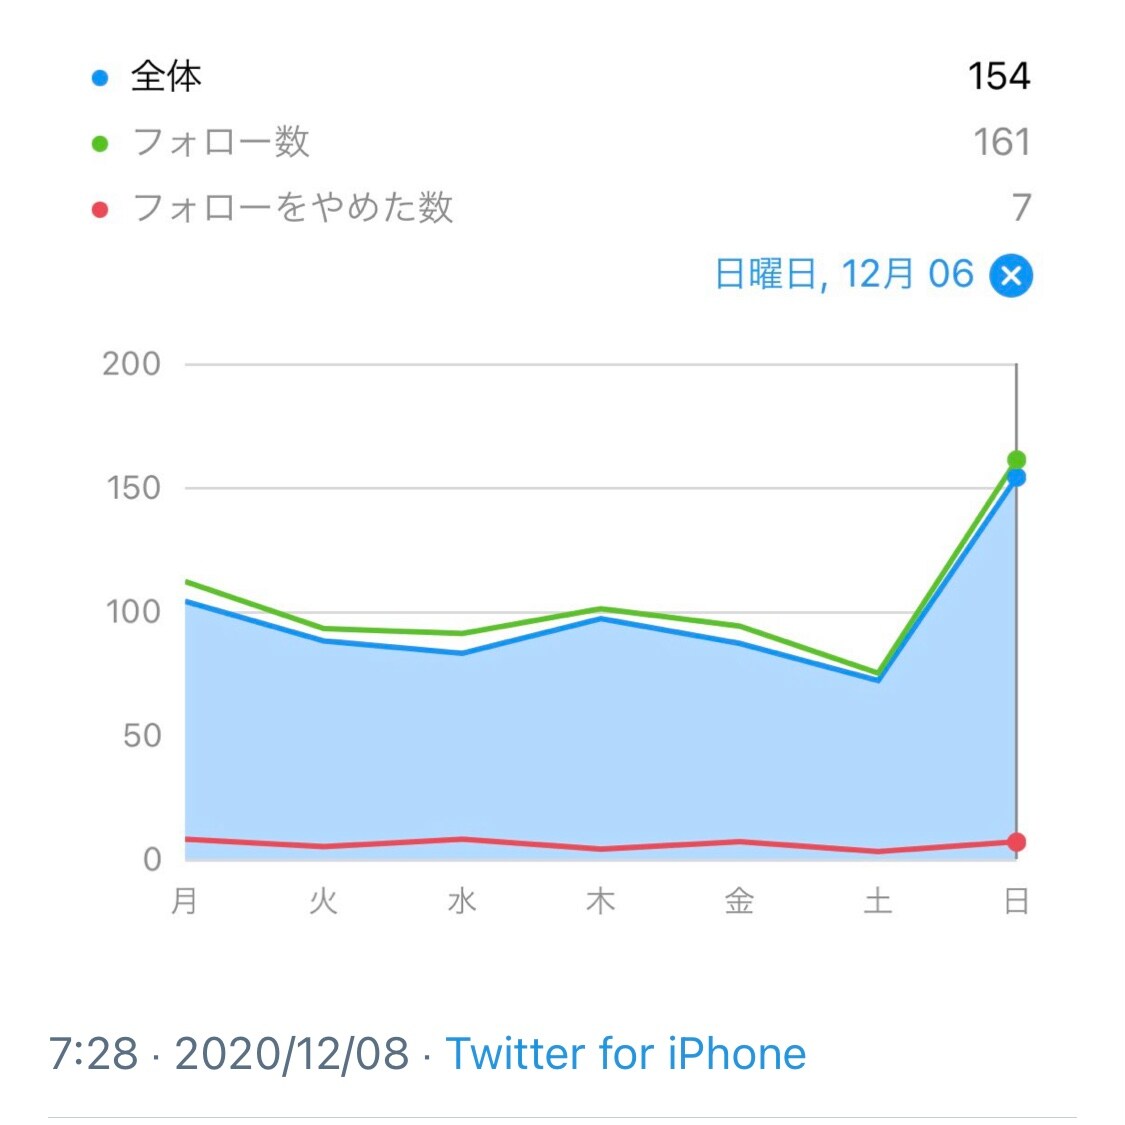 Instagram日本人フォロワー増の実績